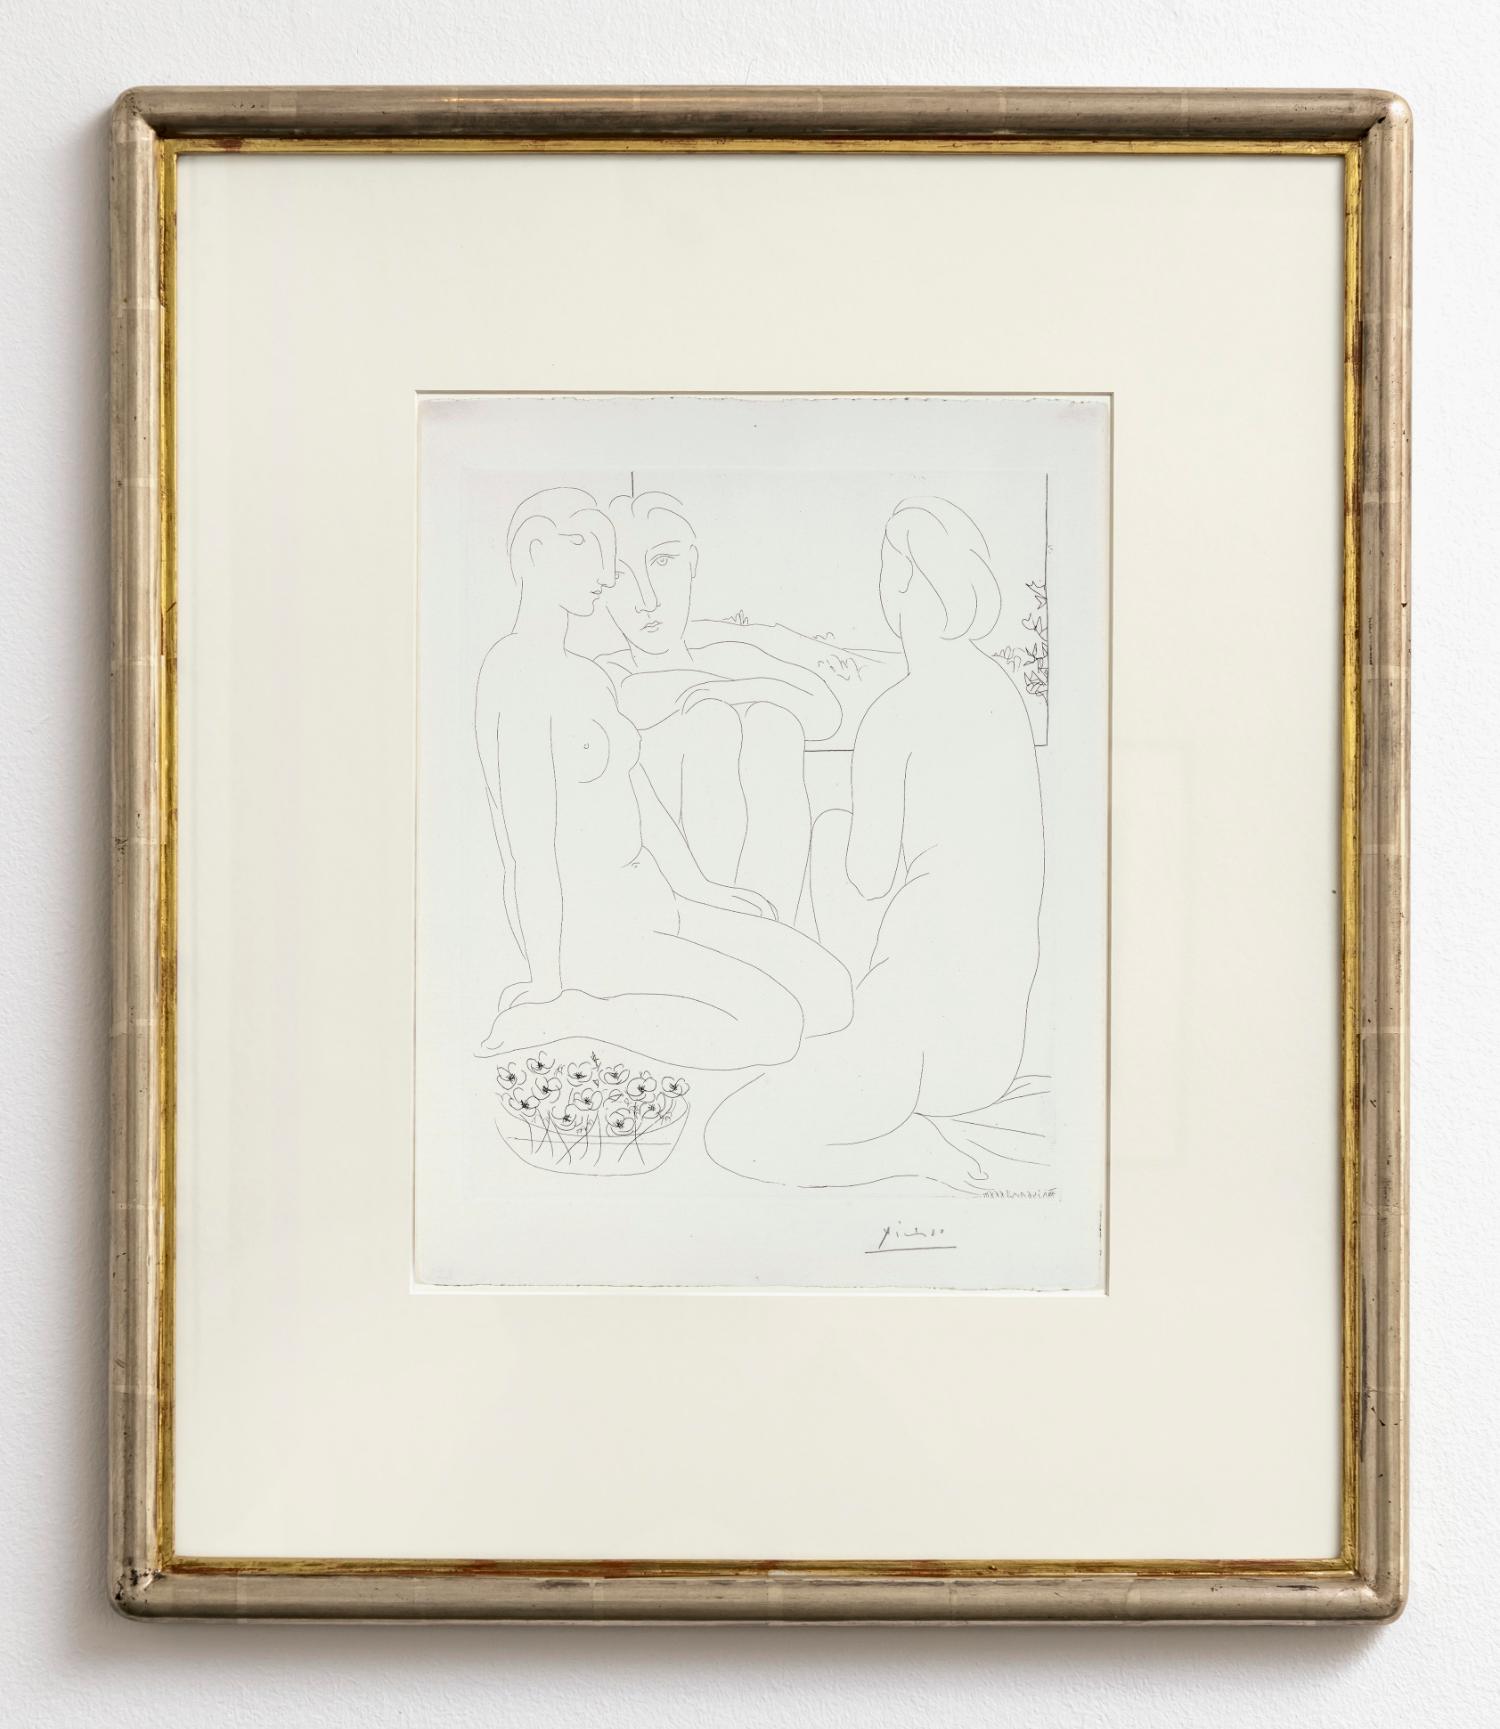 Trois femmes nues près d'une fenêtre - Print by Pablo Picasso